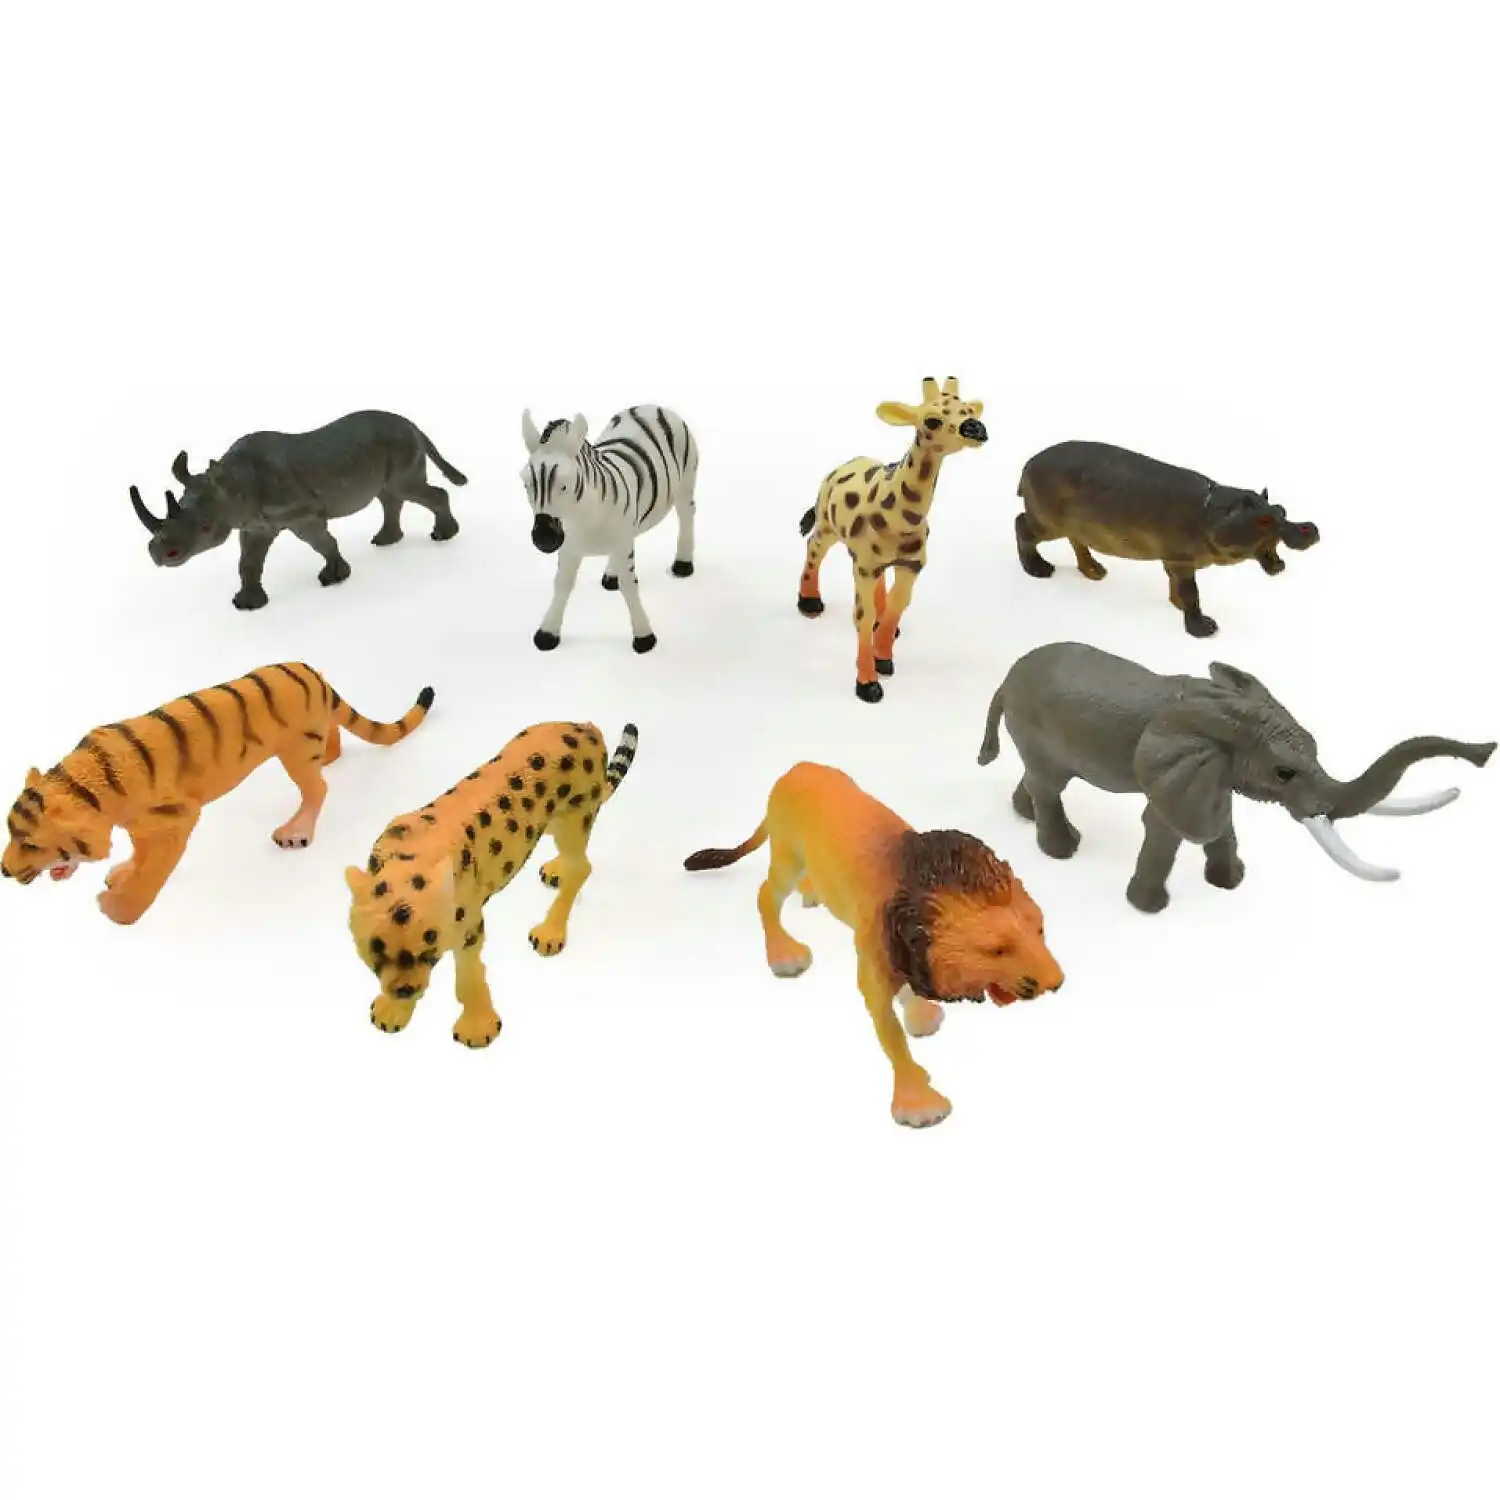 Peterkin - Classics Jungle World 8 Piece Figure Set